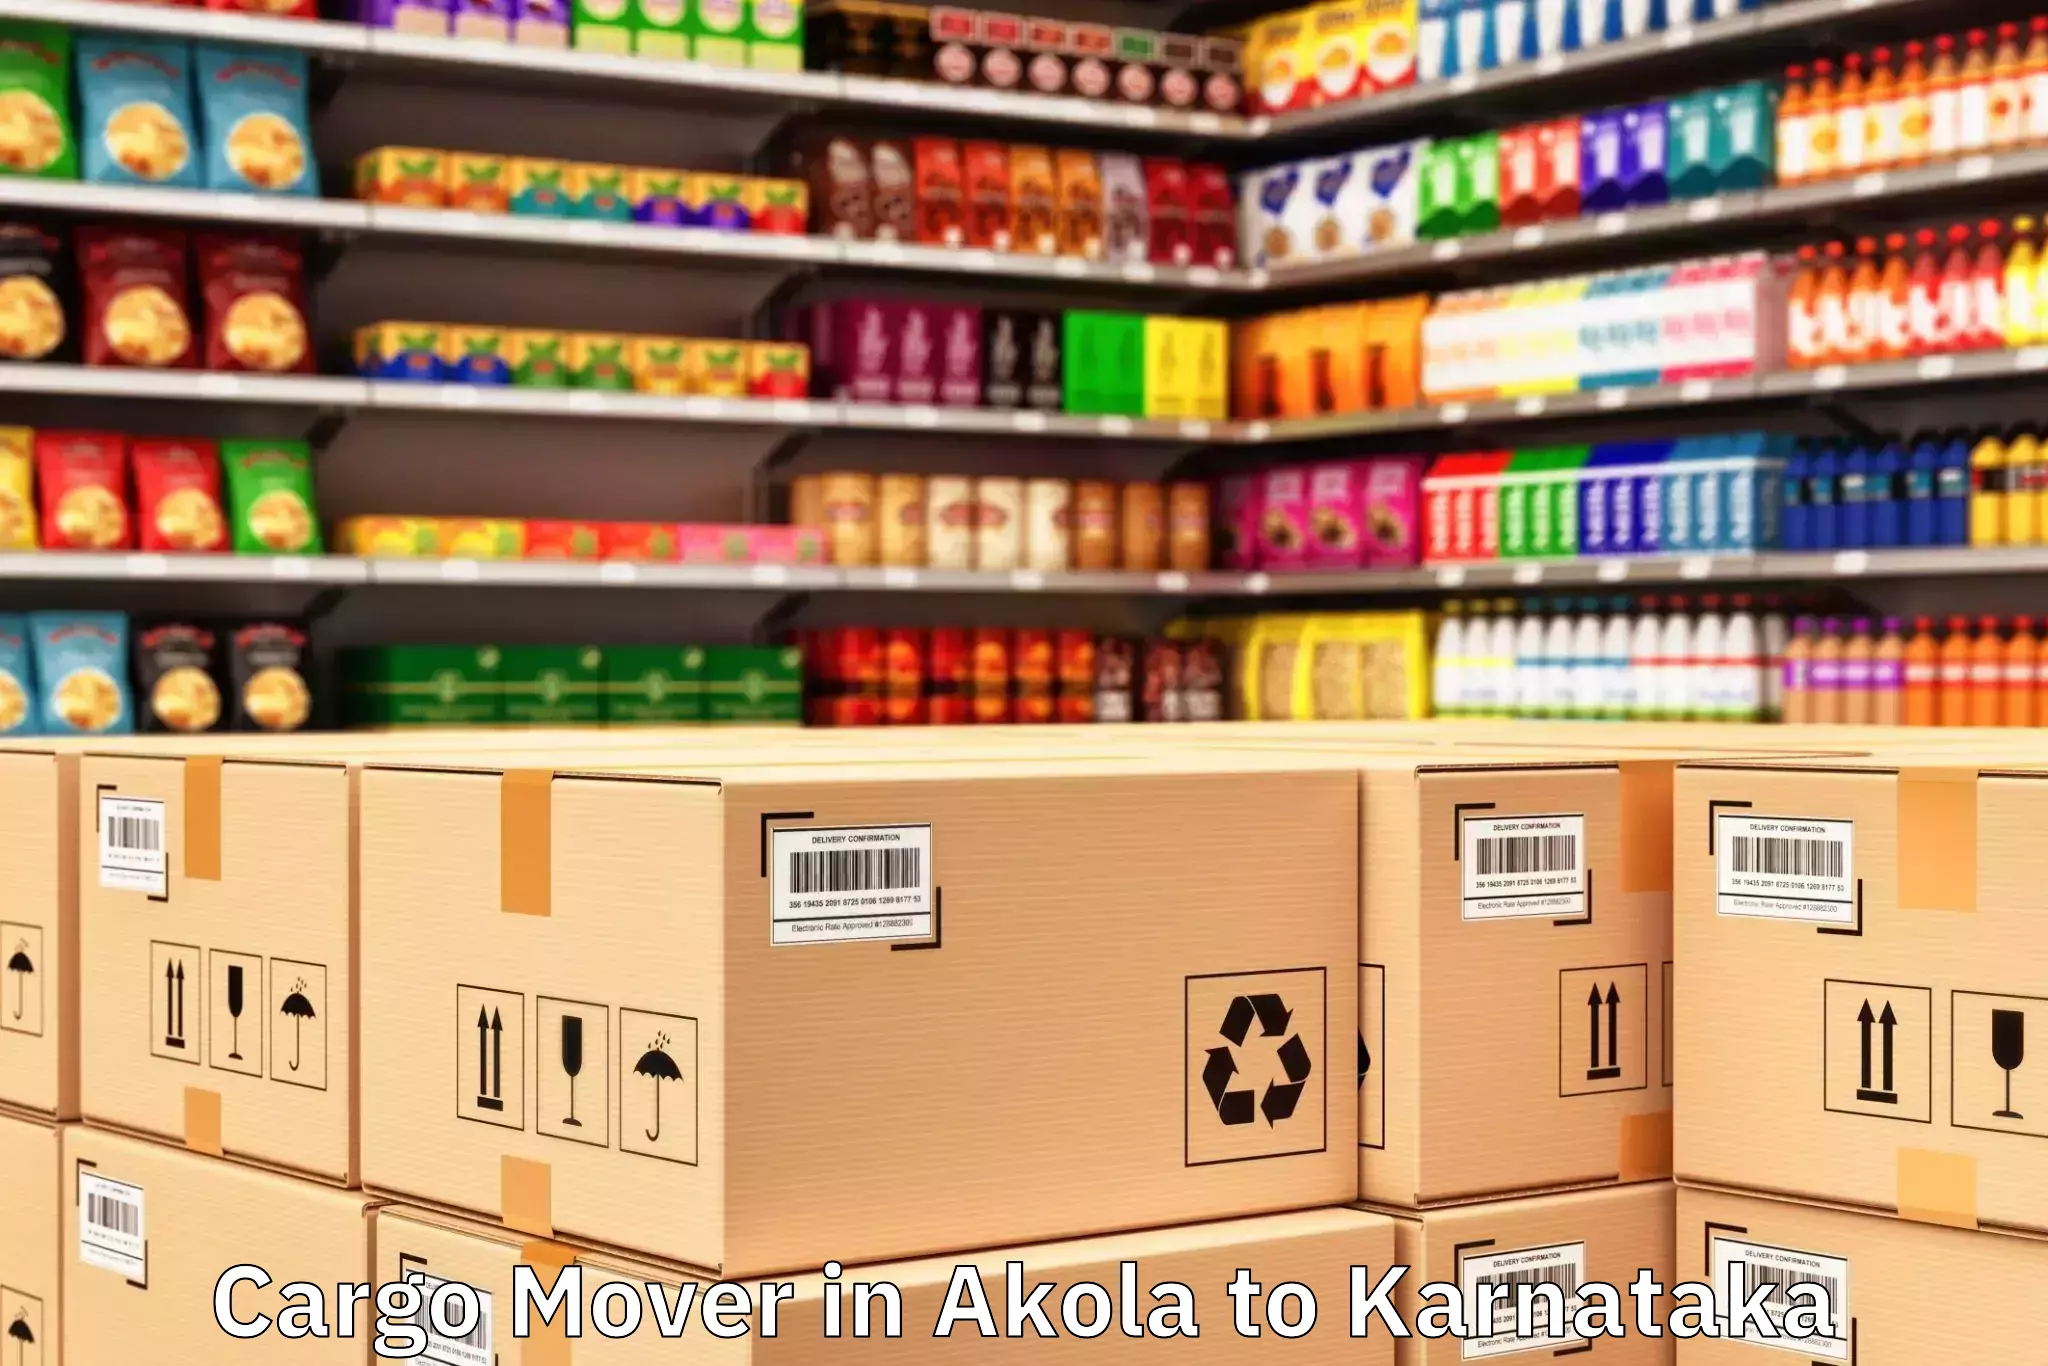 Top Akola to B Kothakota Cargo Mover Available